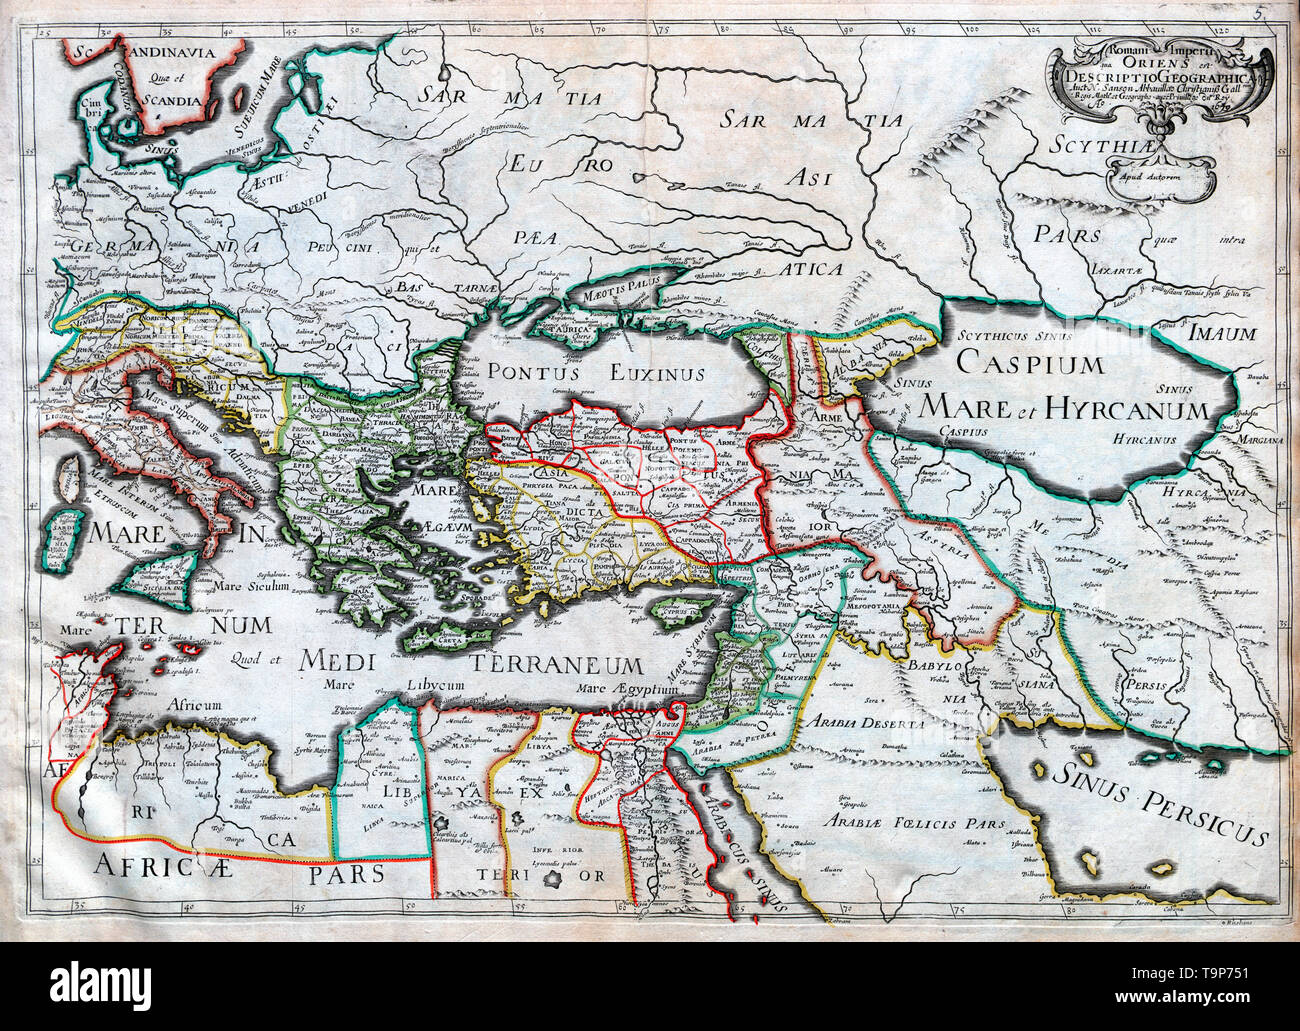 Romani Imperia Qua Oriens - Carte de l'Est de l'Empire romain - Atlas Sanson, vers 1700 Banque D'Images